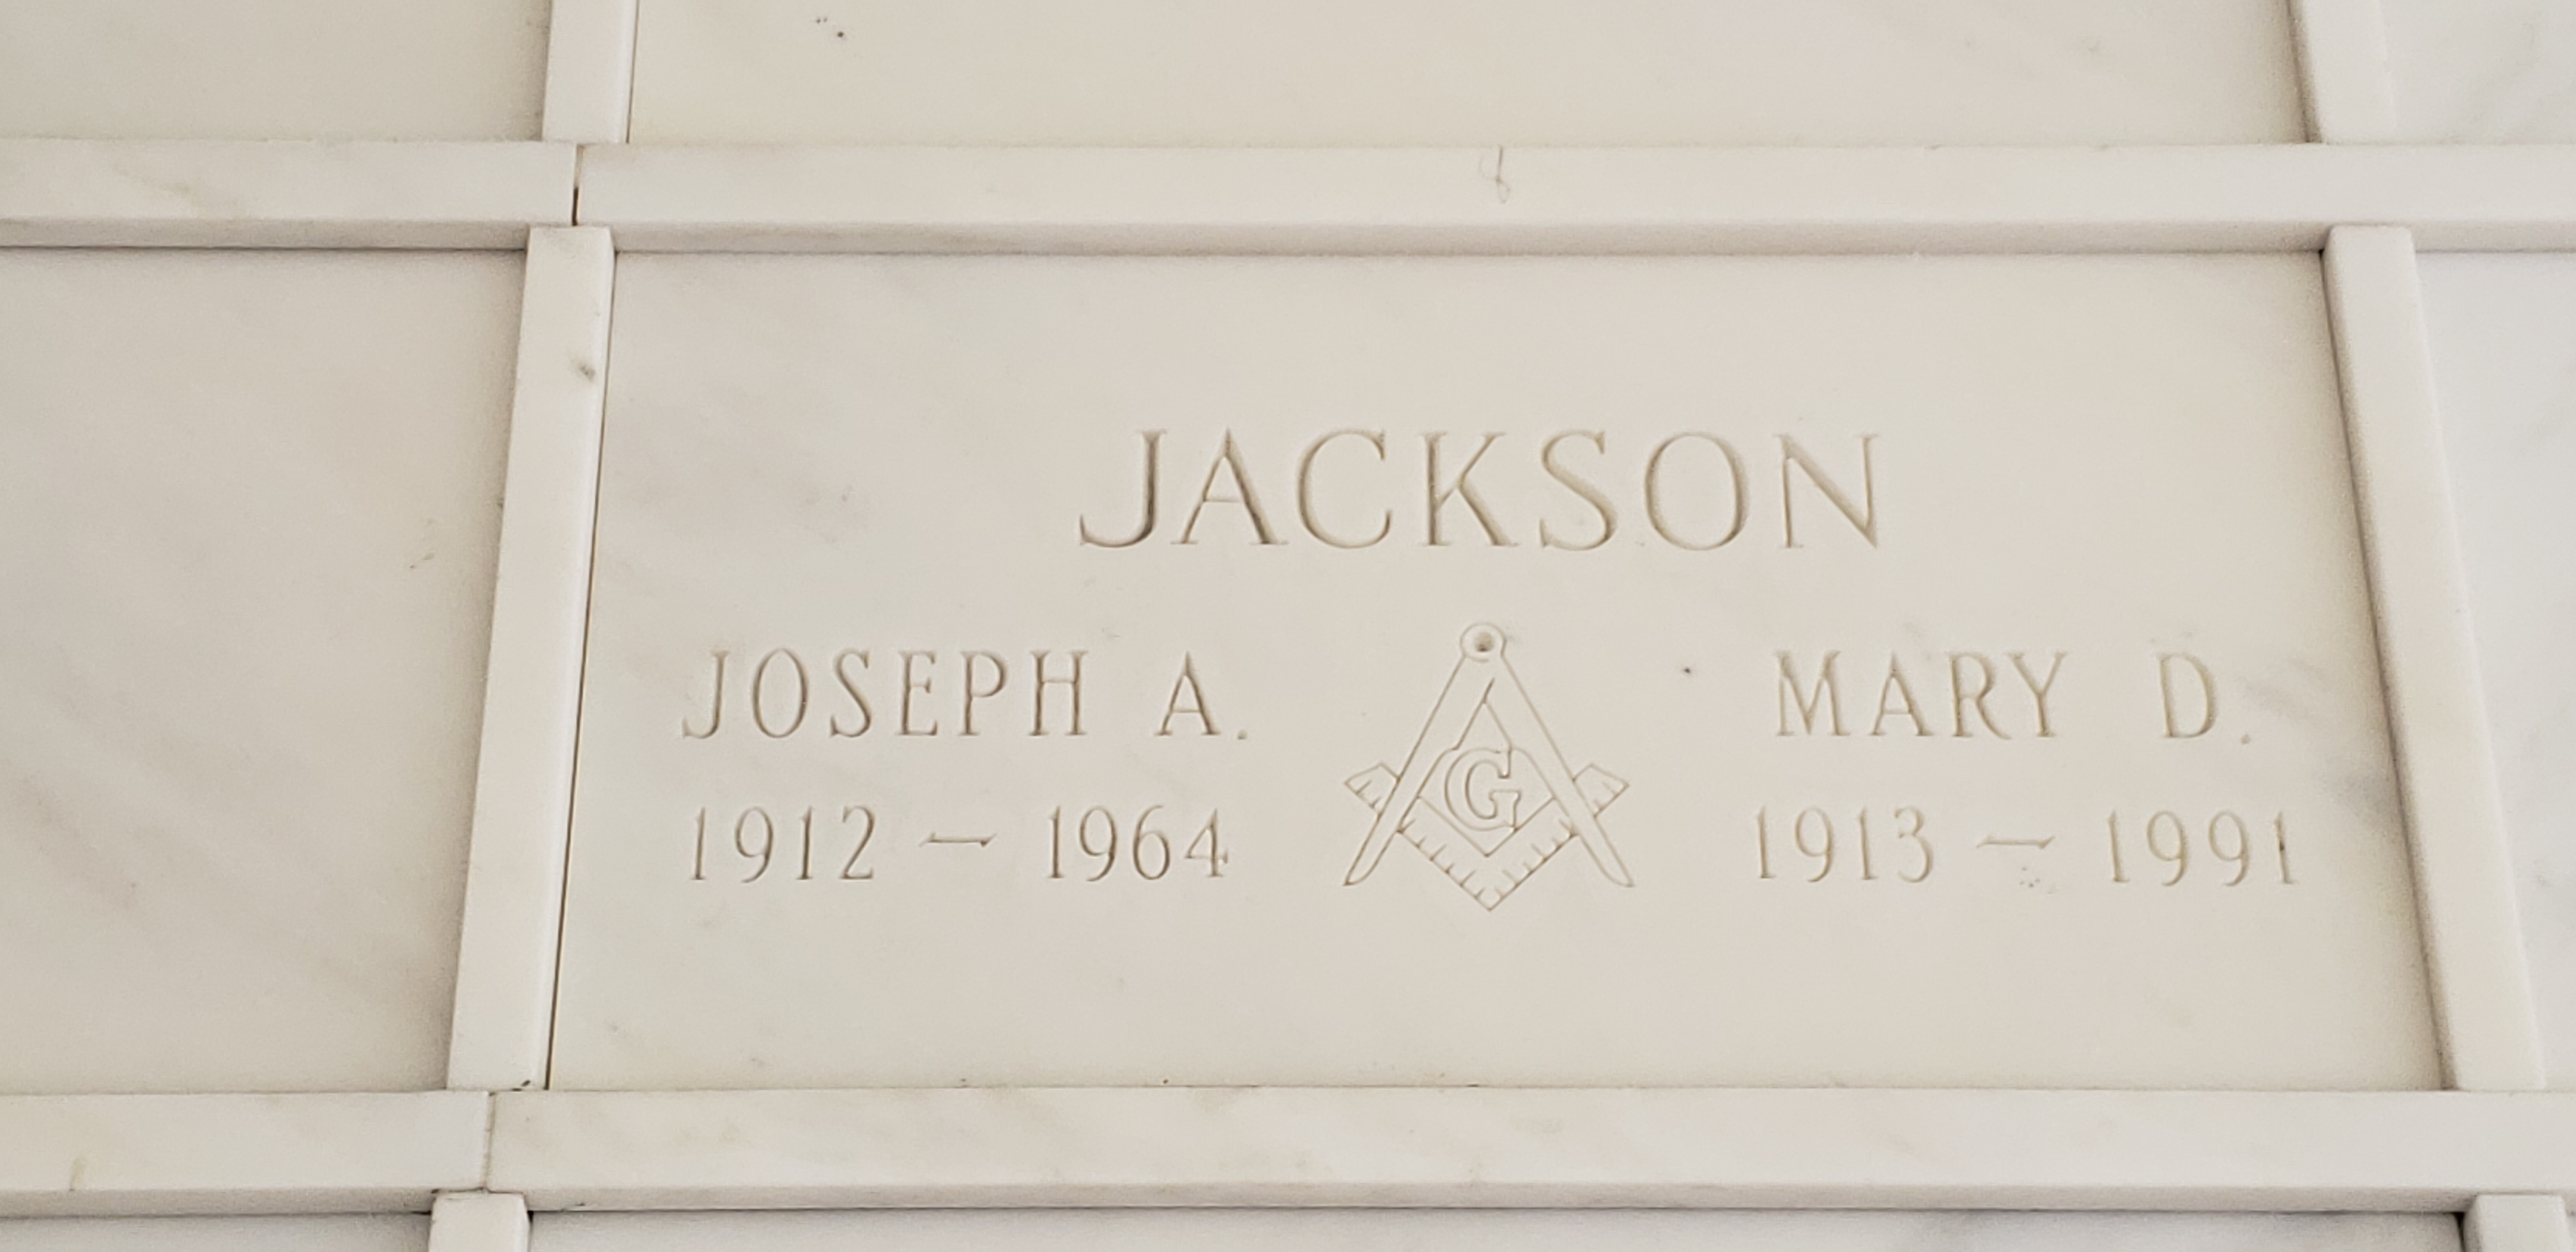 Mary D Jackson